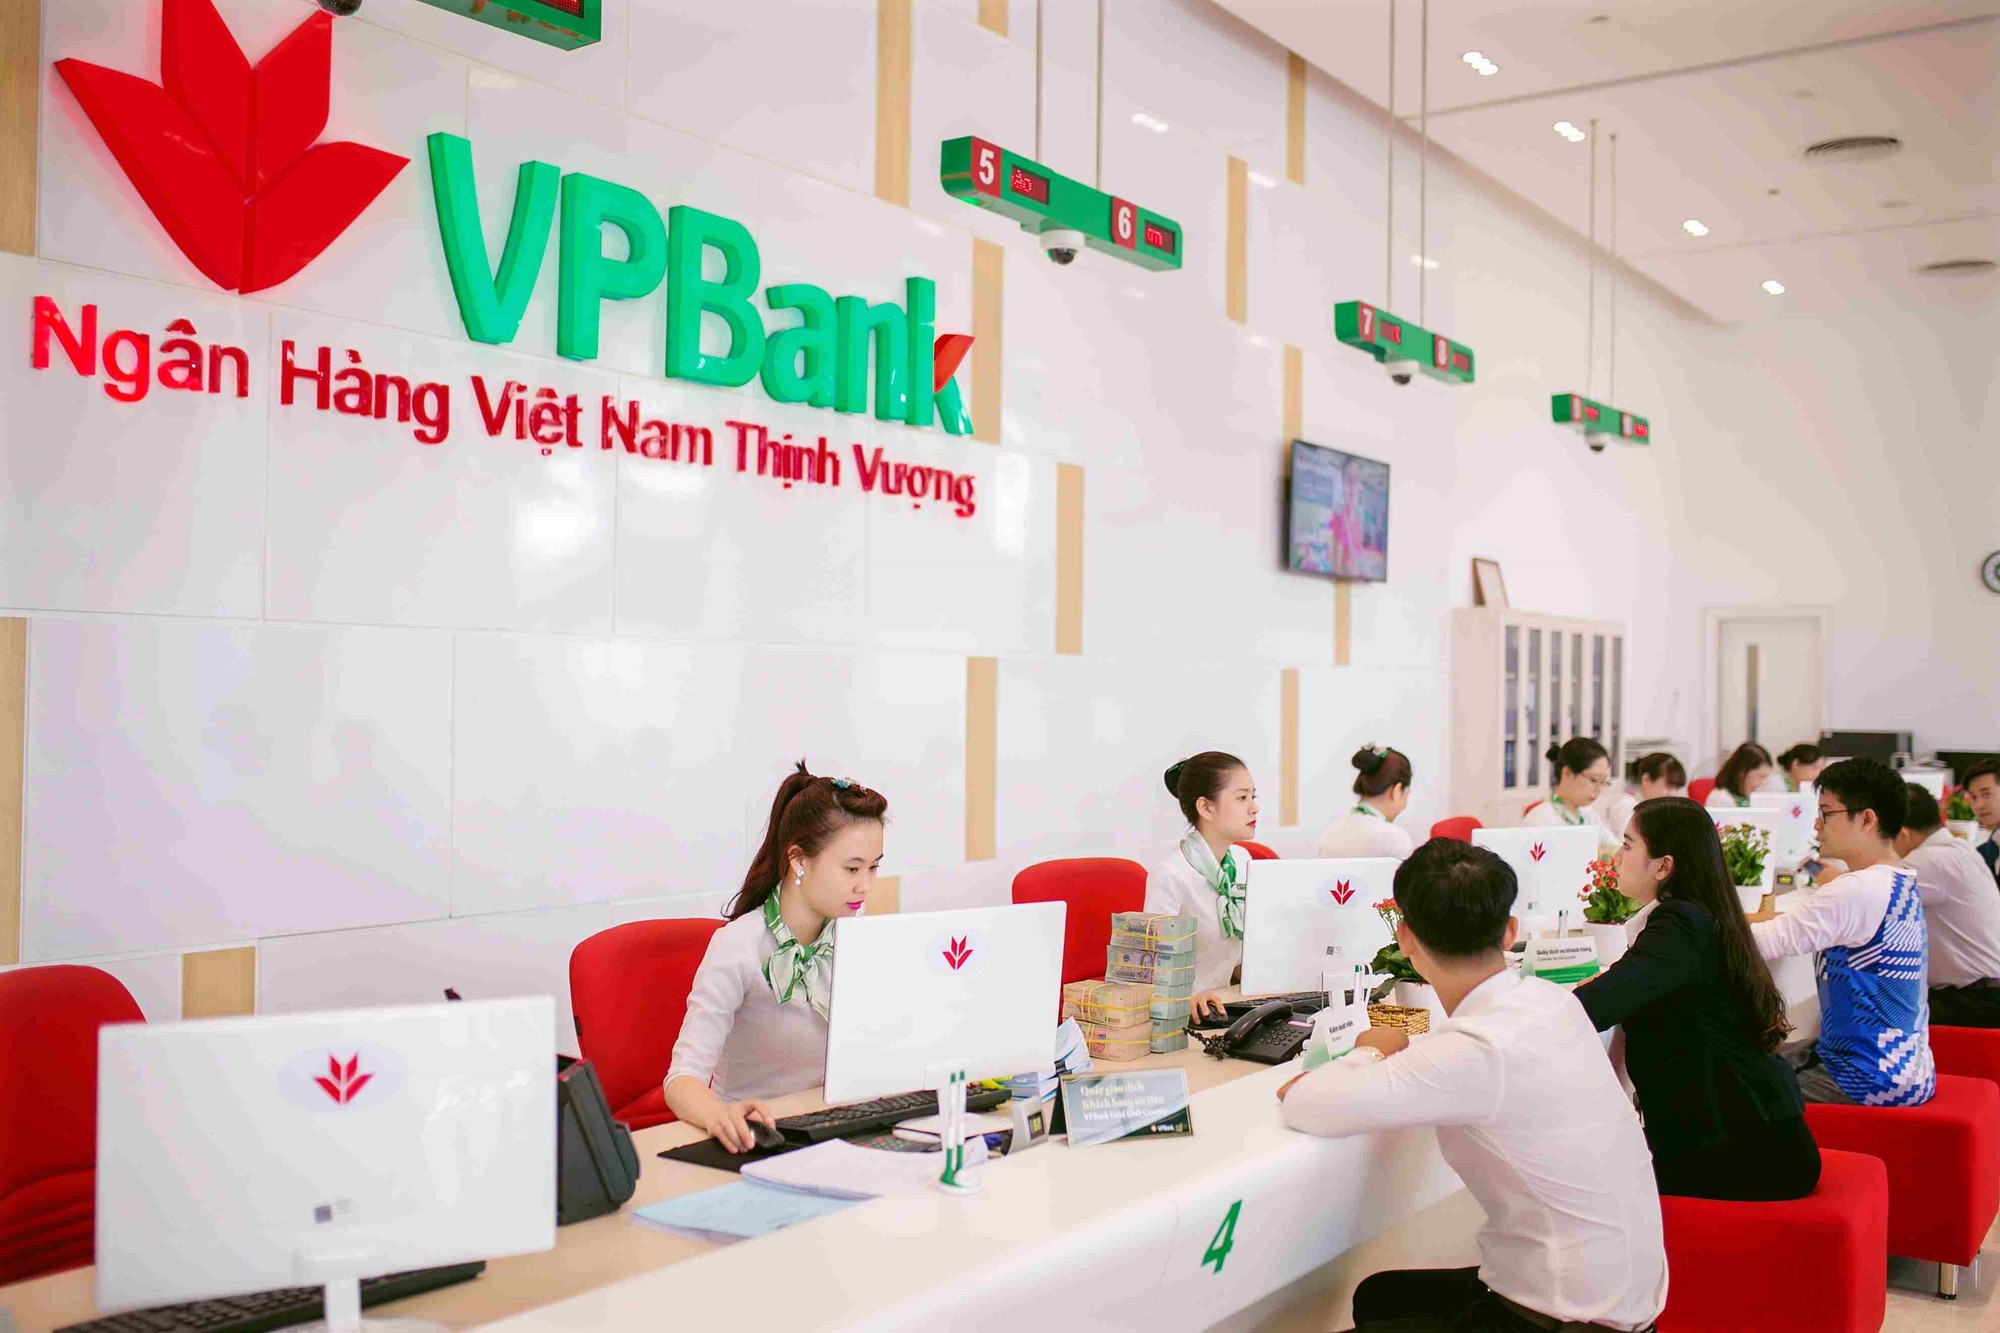 Mở tài khoản VPBank mang đến nhiều tiện ích cho khách hàng